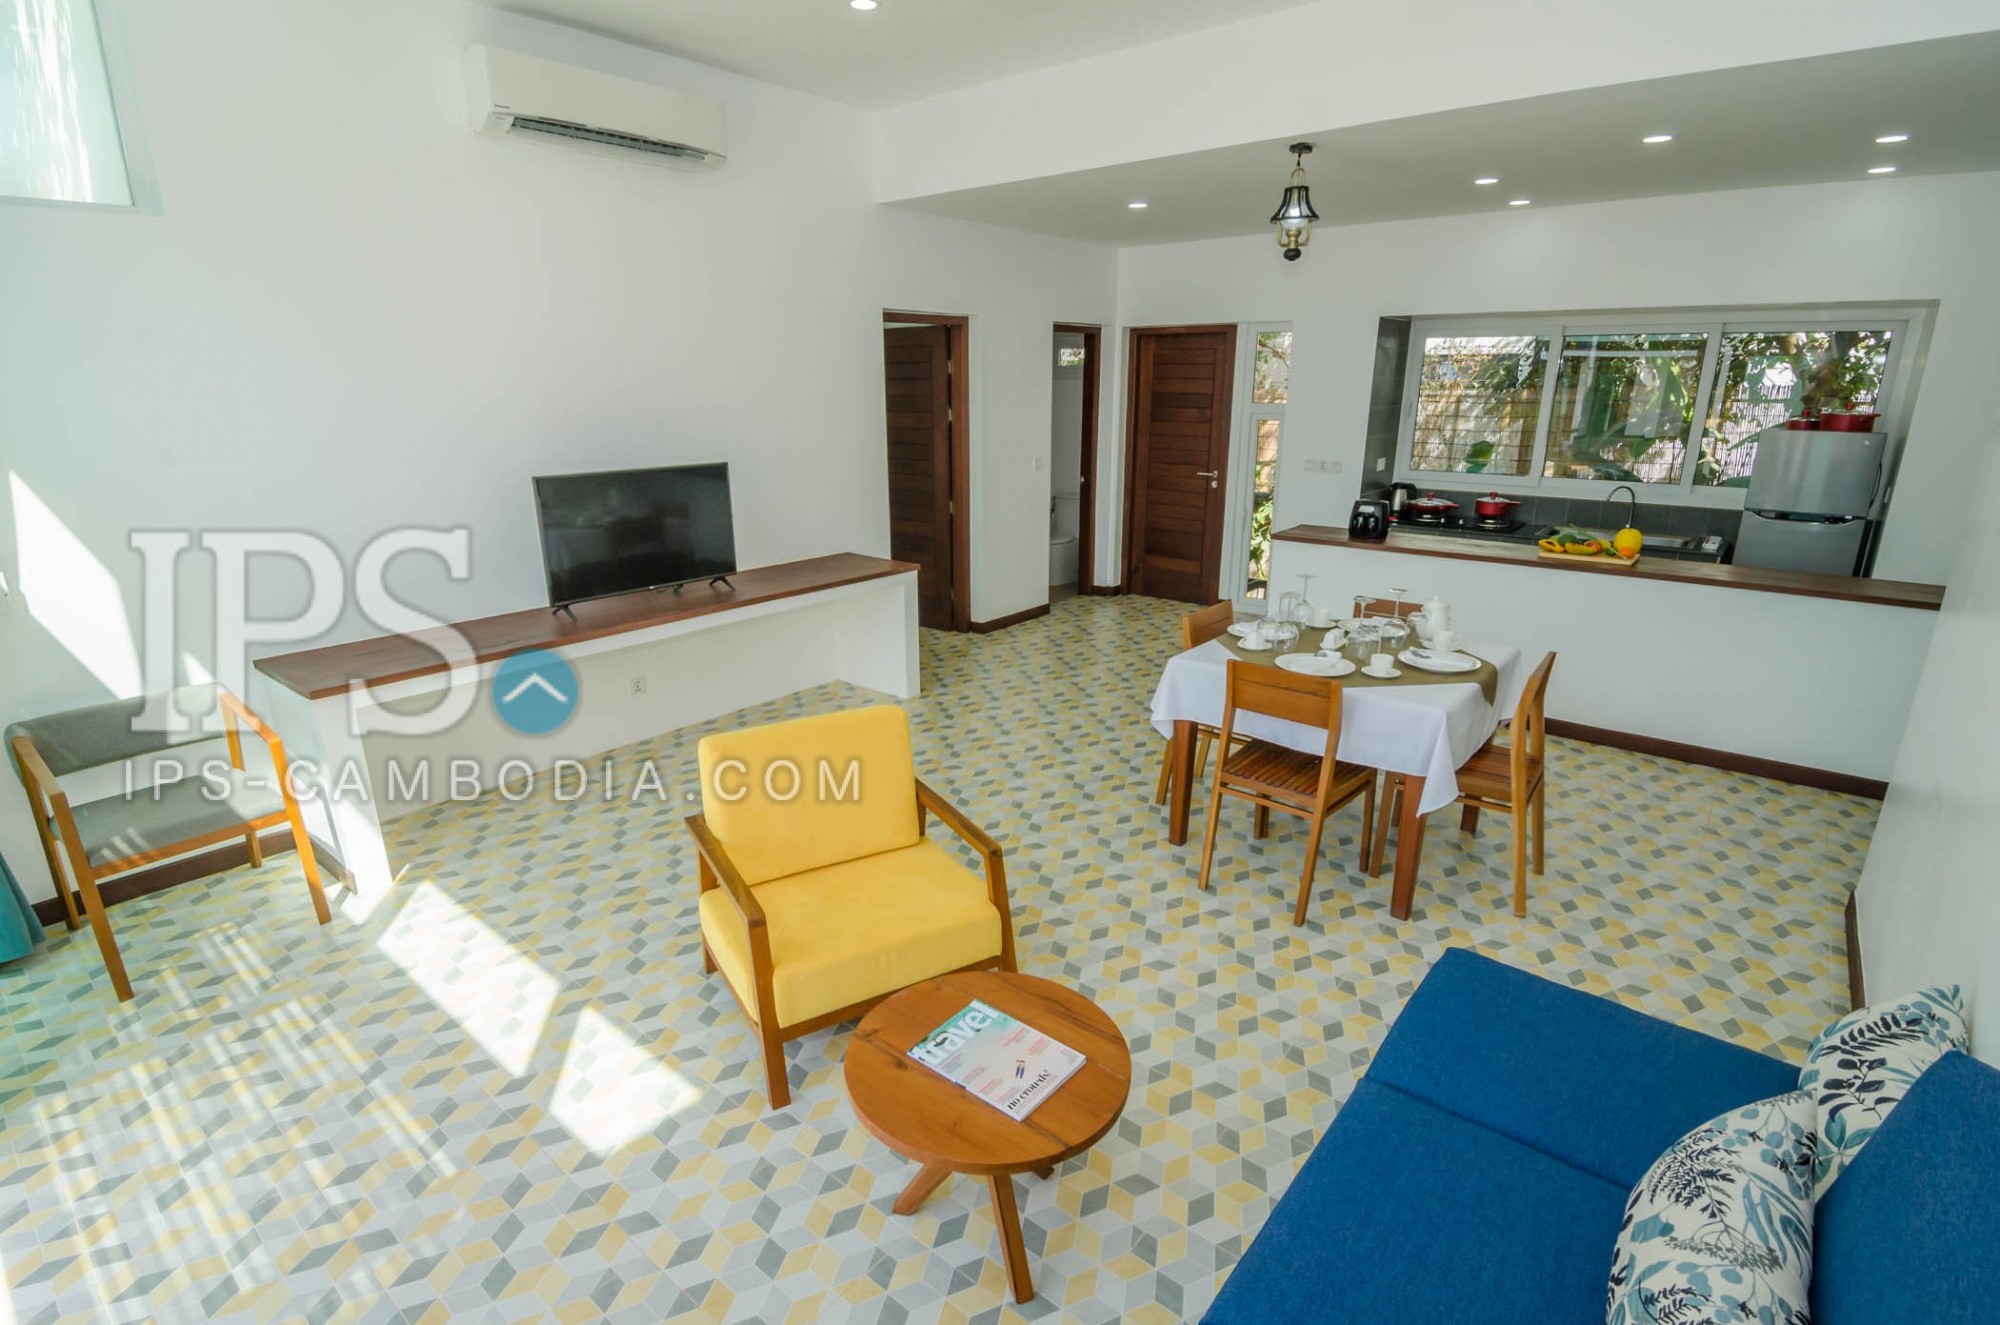 2 Bedroom Apartment For Rent - Chreav, Siem Reap